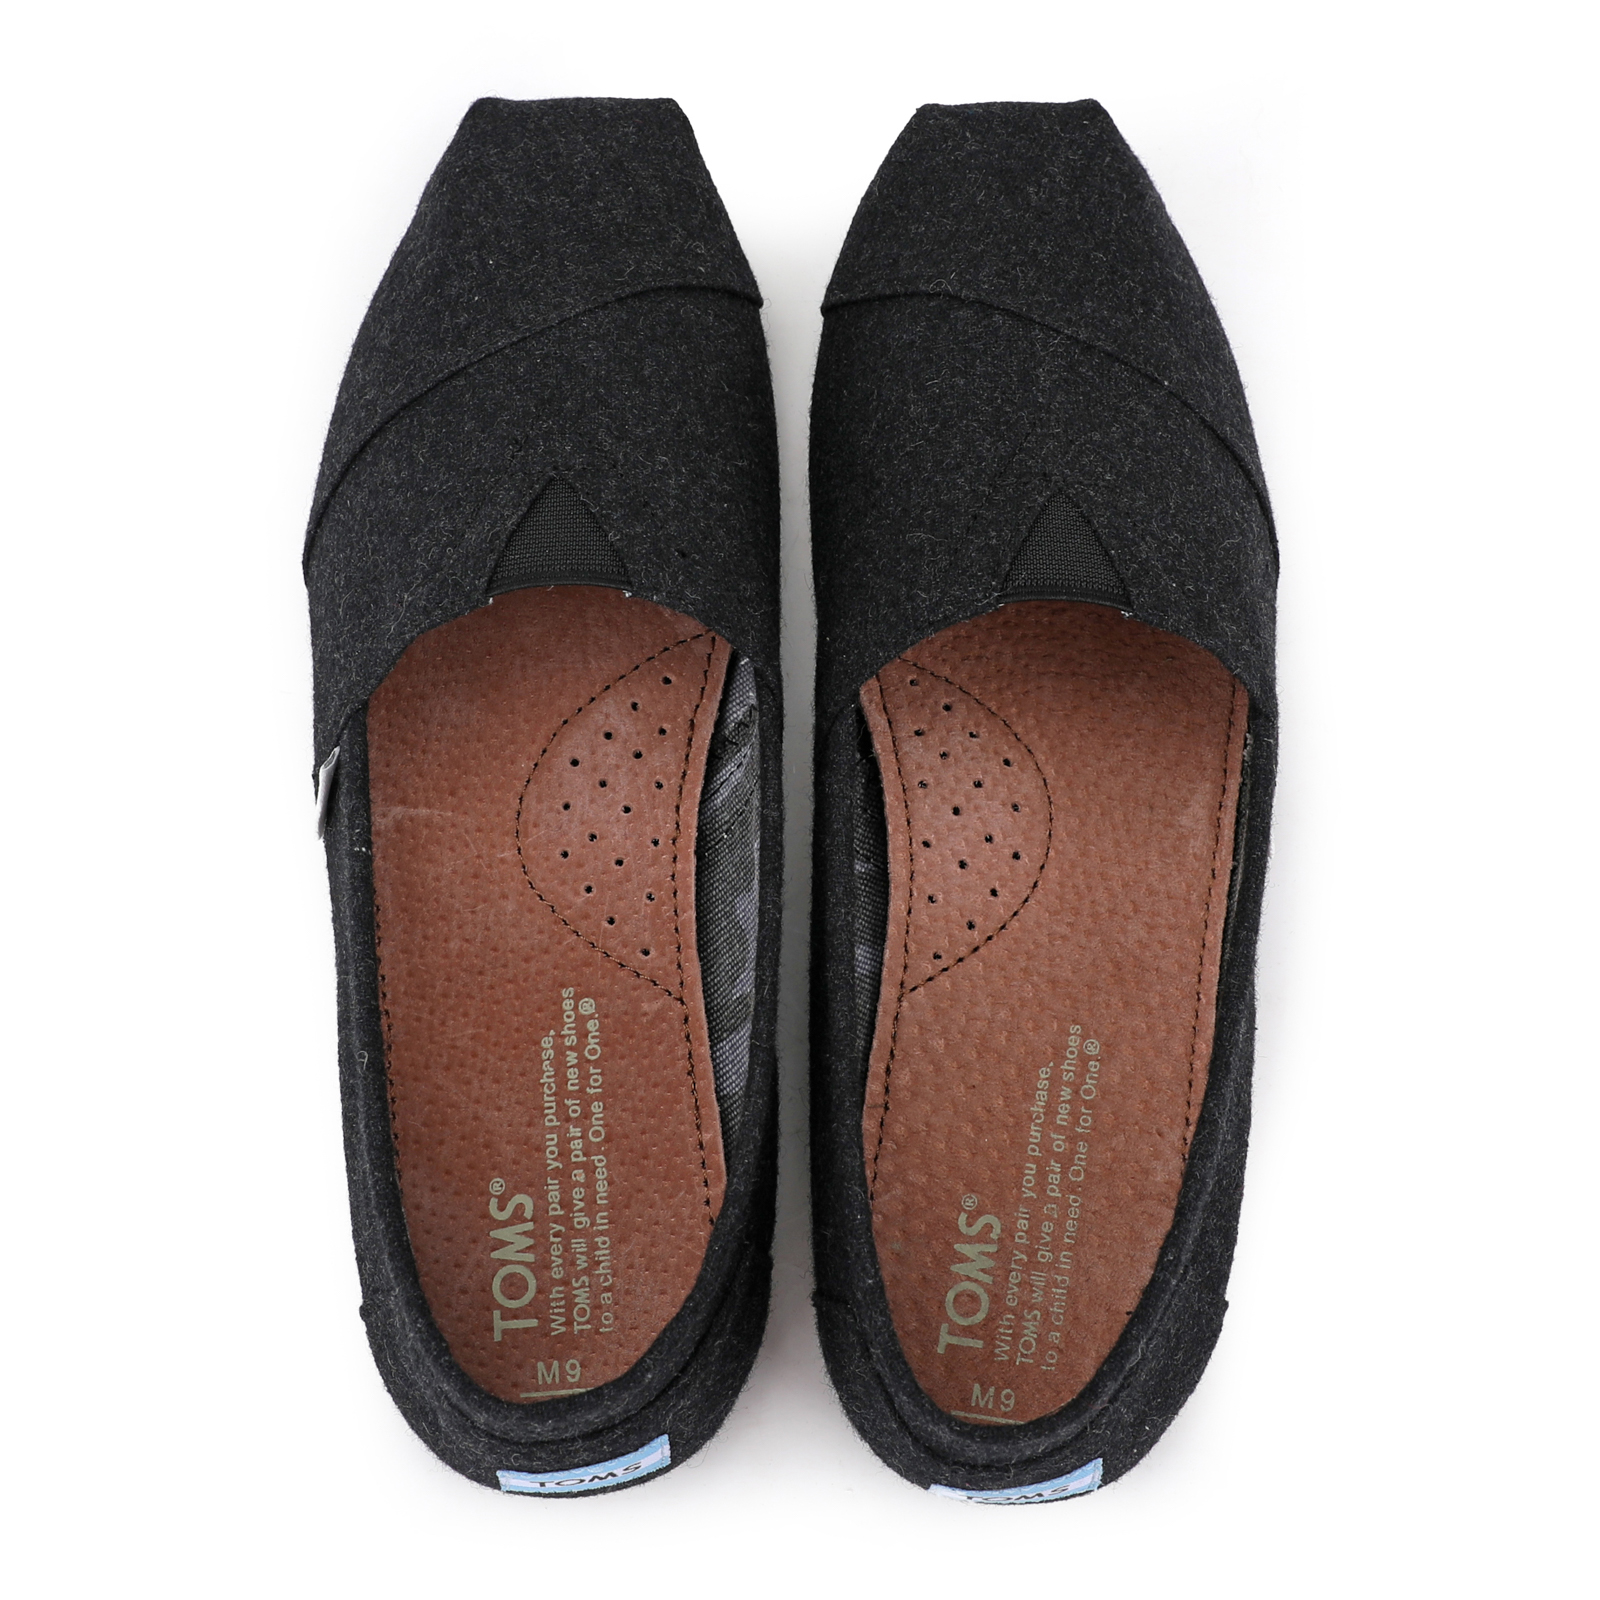 台灣Toms新款黑色法蘭絨男鞋